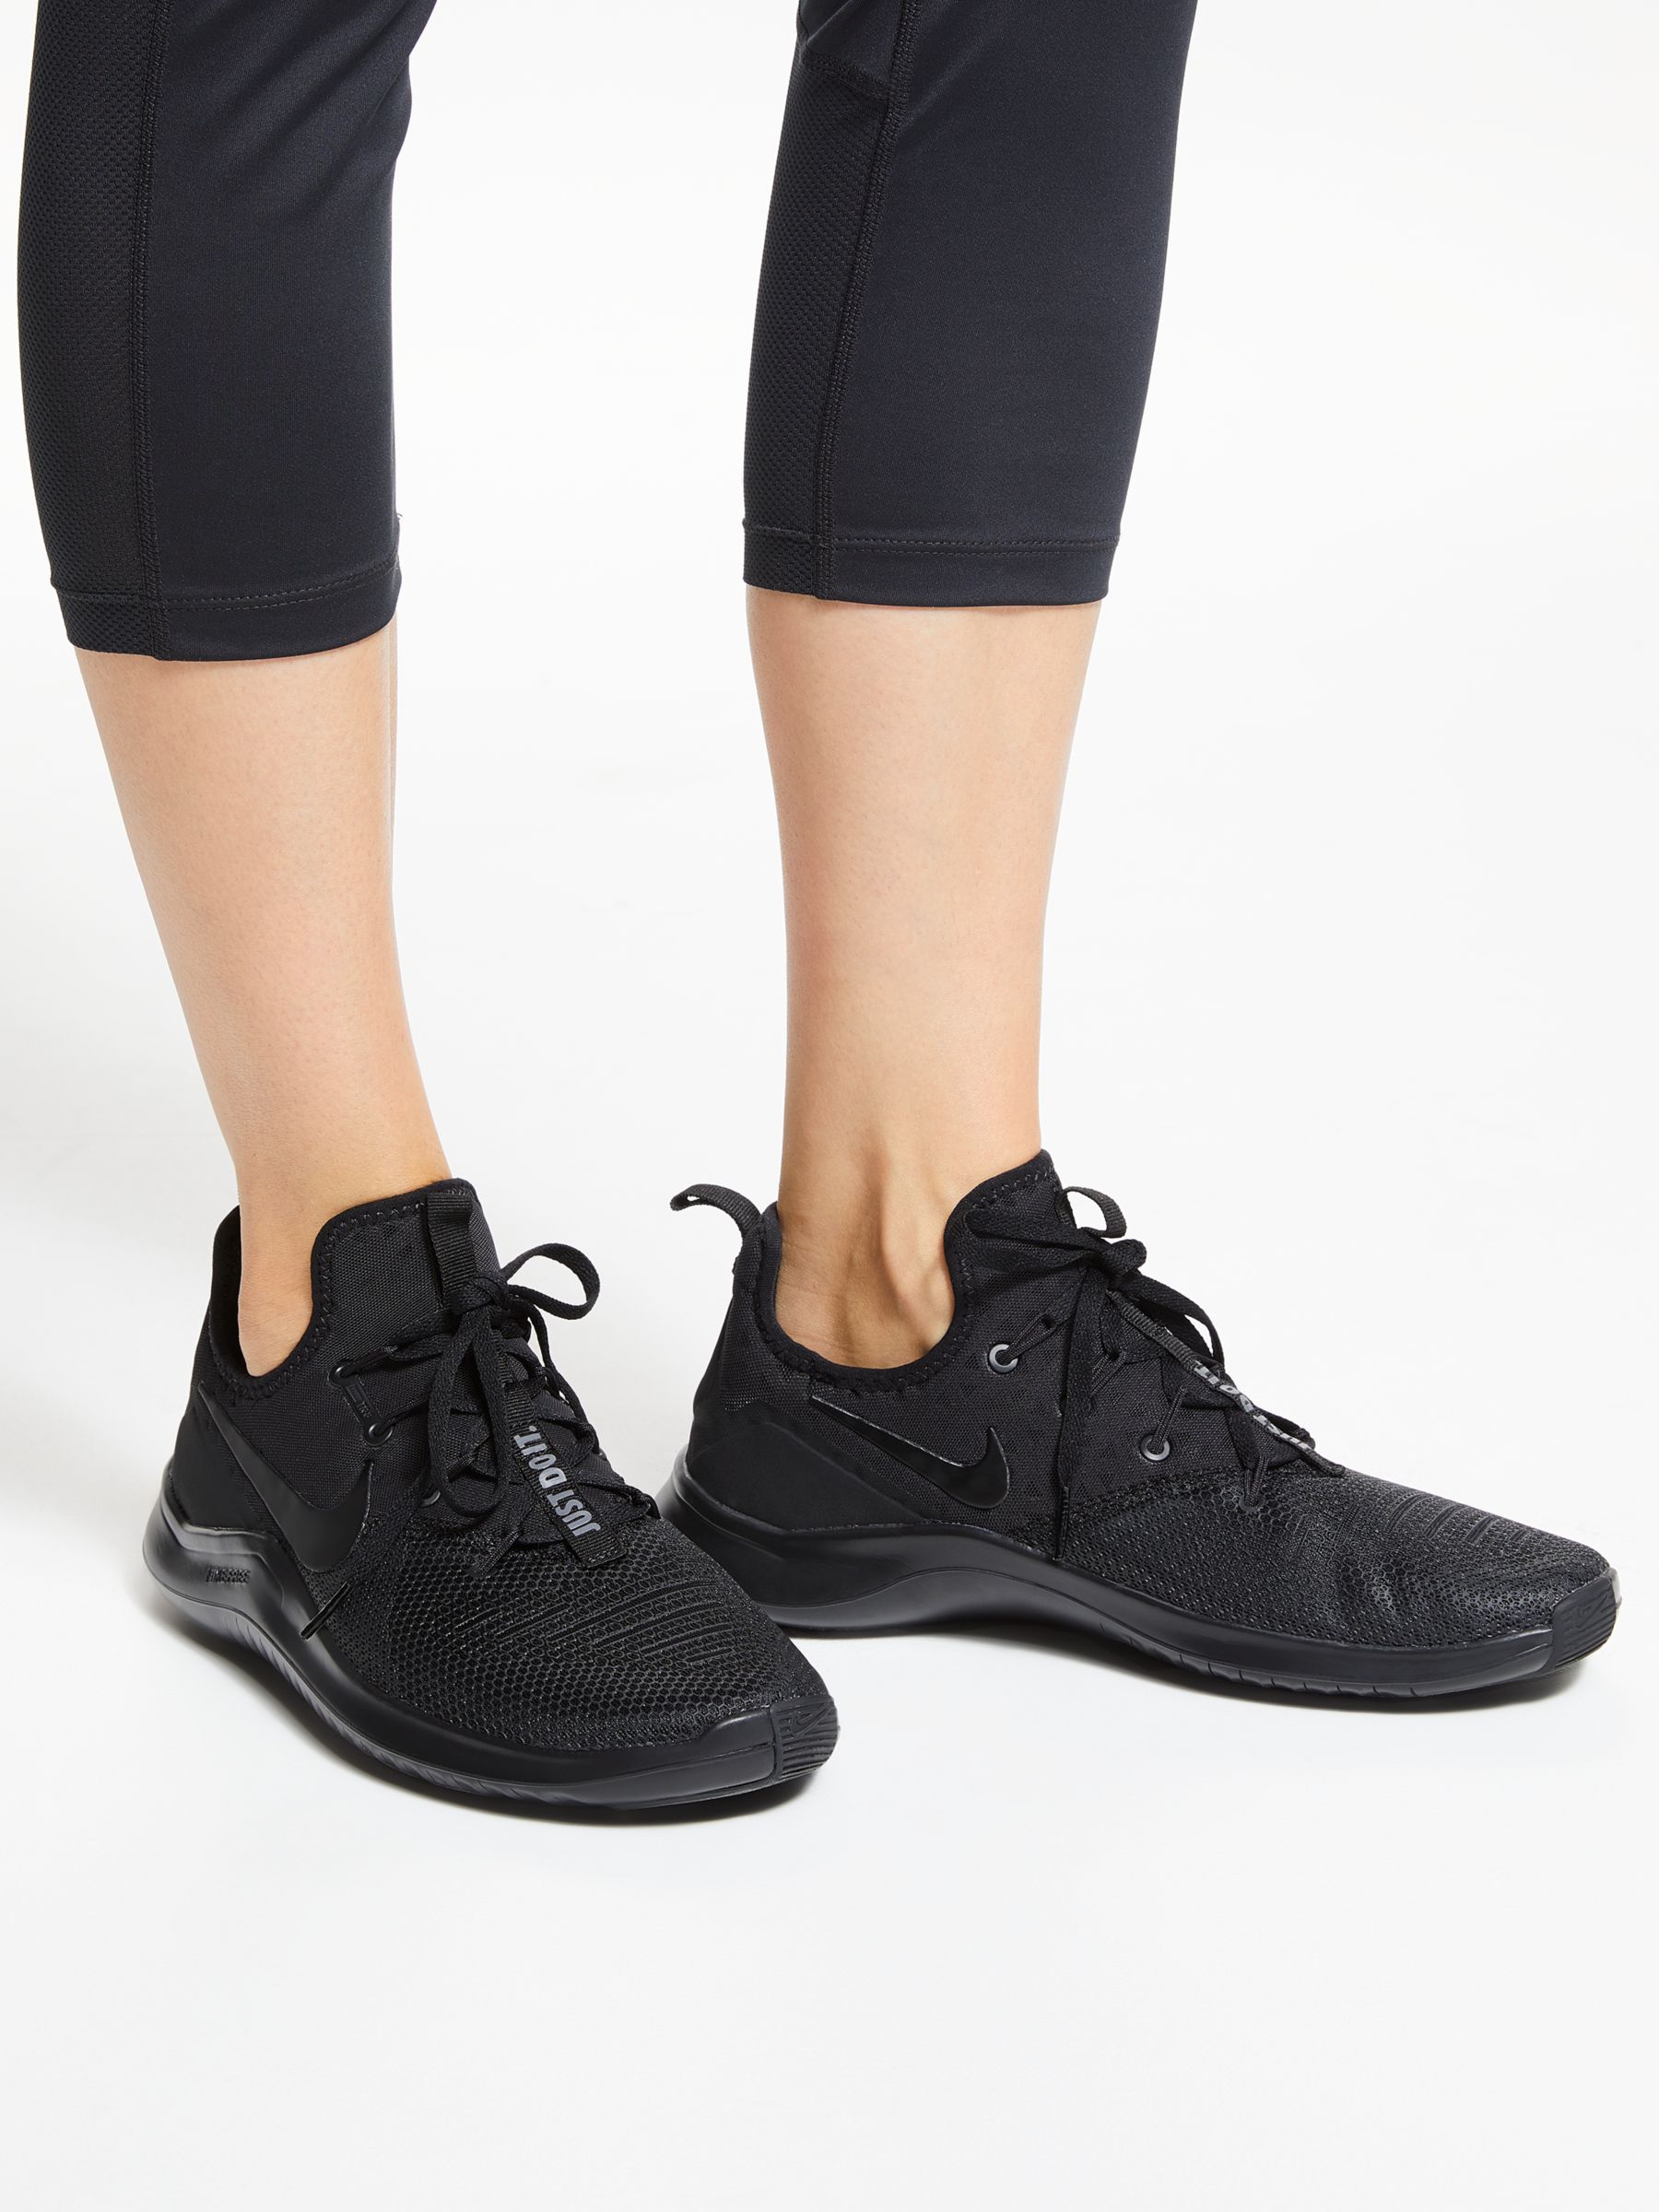 black nike training shoes womens